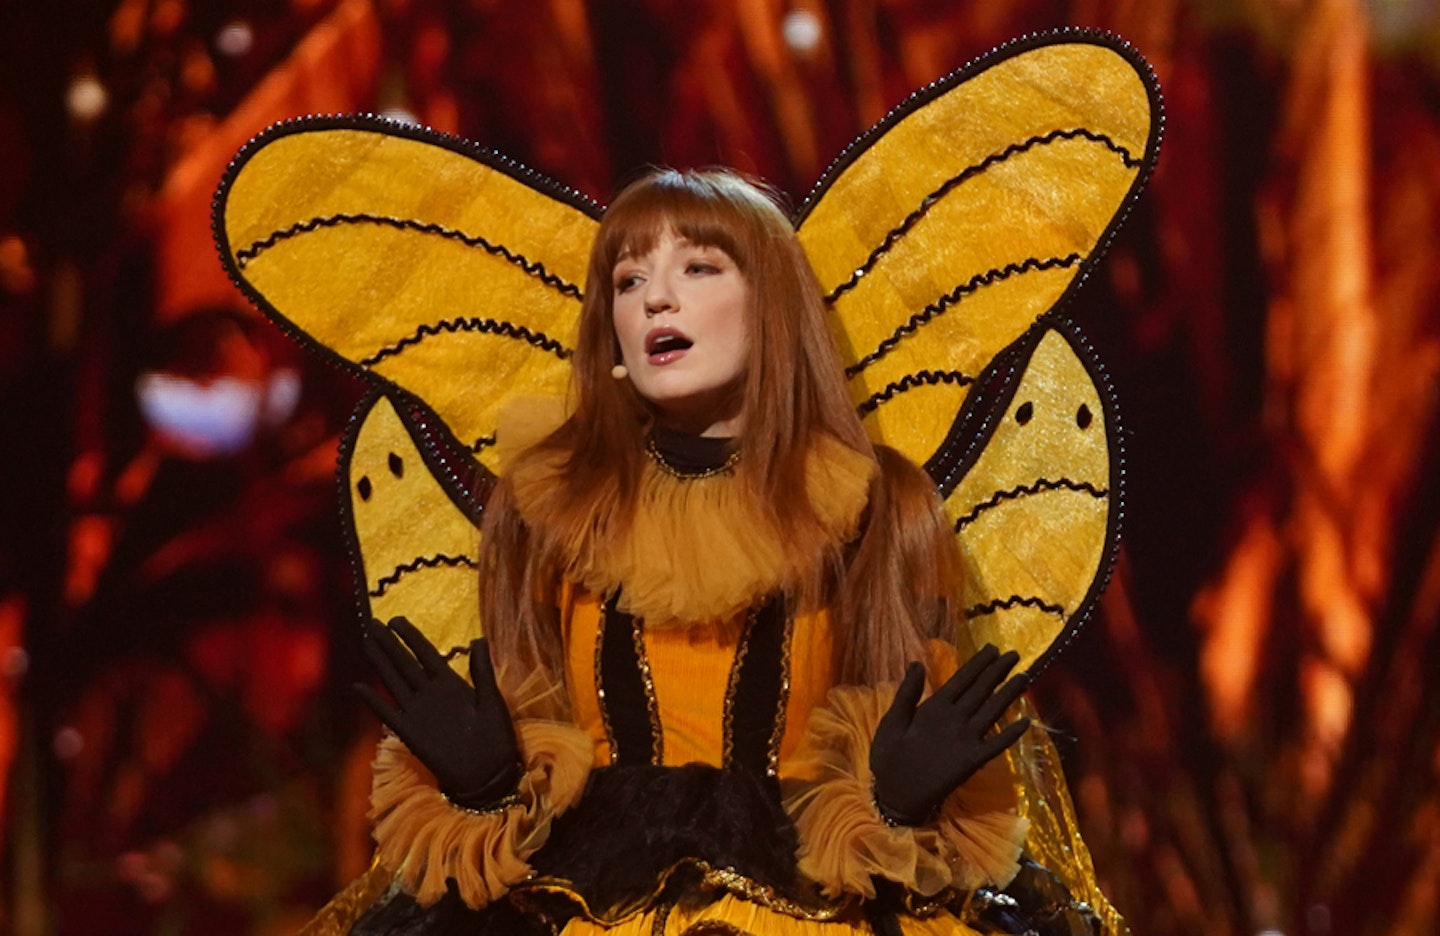 Girls Aloud's Nicola Roberts as Queen Bee in The Masked Singer